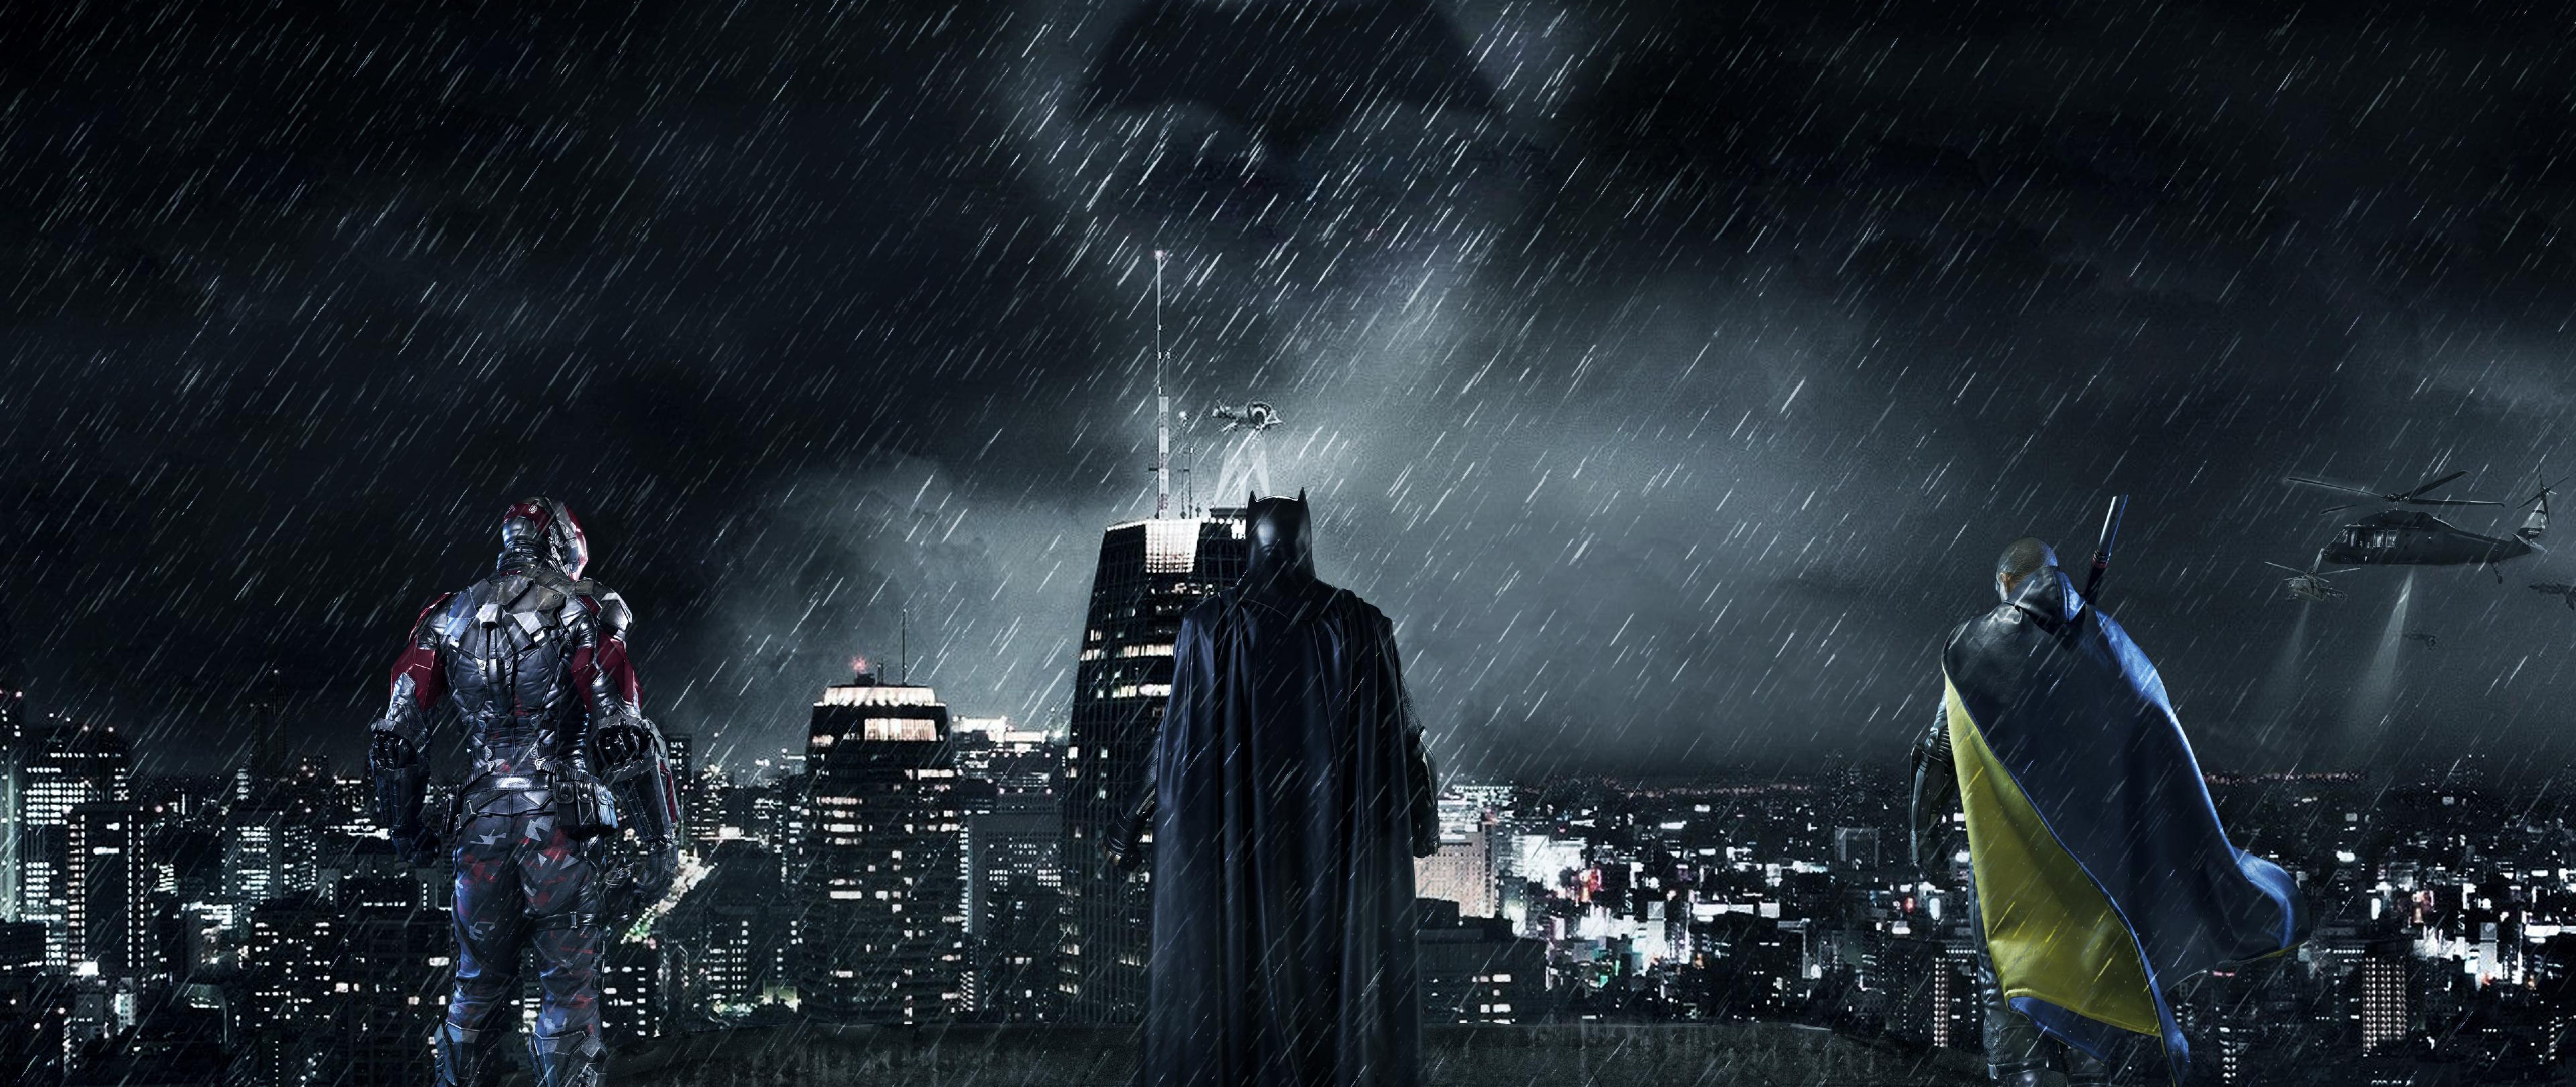 Free Download Gotham City Batman HD Wallpaper for Desktop